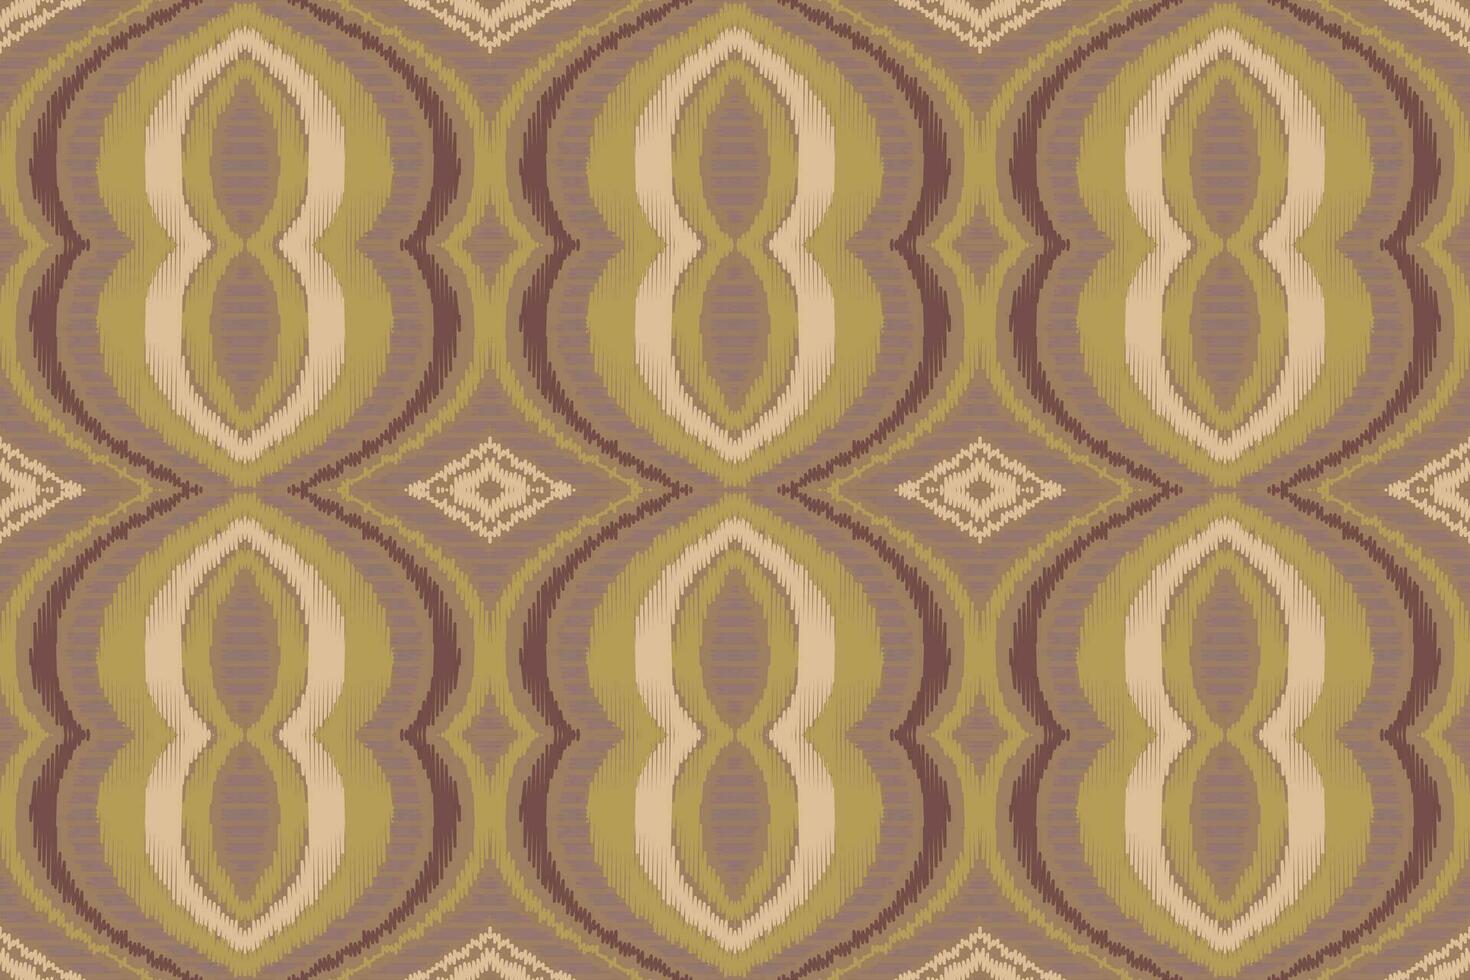 ikat damast- paisley broderi bakgrund. ikat blommig geometrisk etnisk orientalisk mönster traditionell.aztec stil abstrakt vektor illustration.design för textur, tyg, kläder, inslagning, sarong.